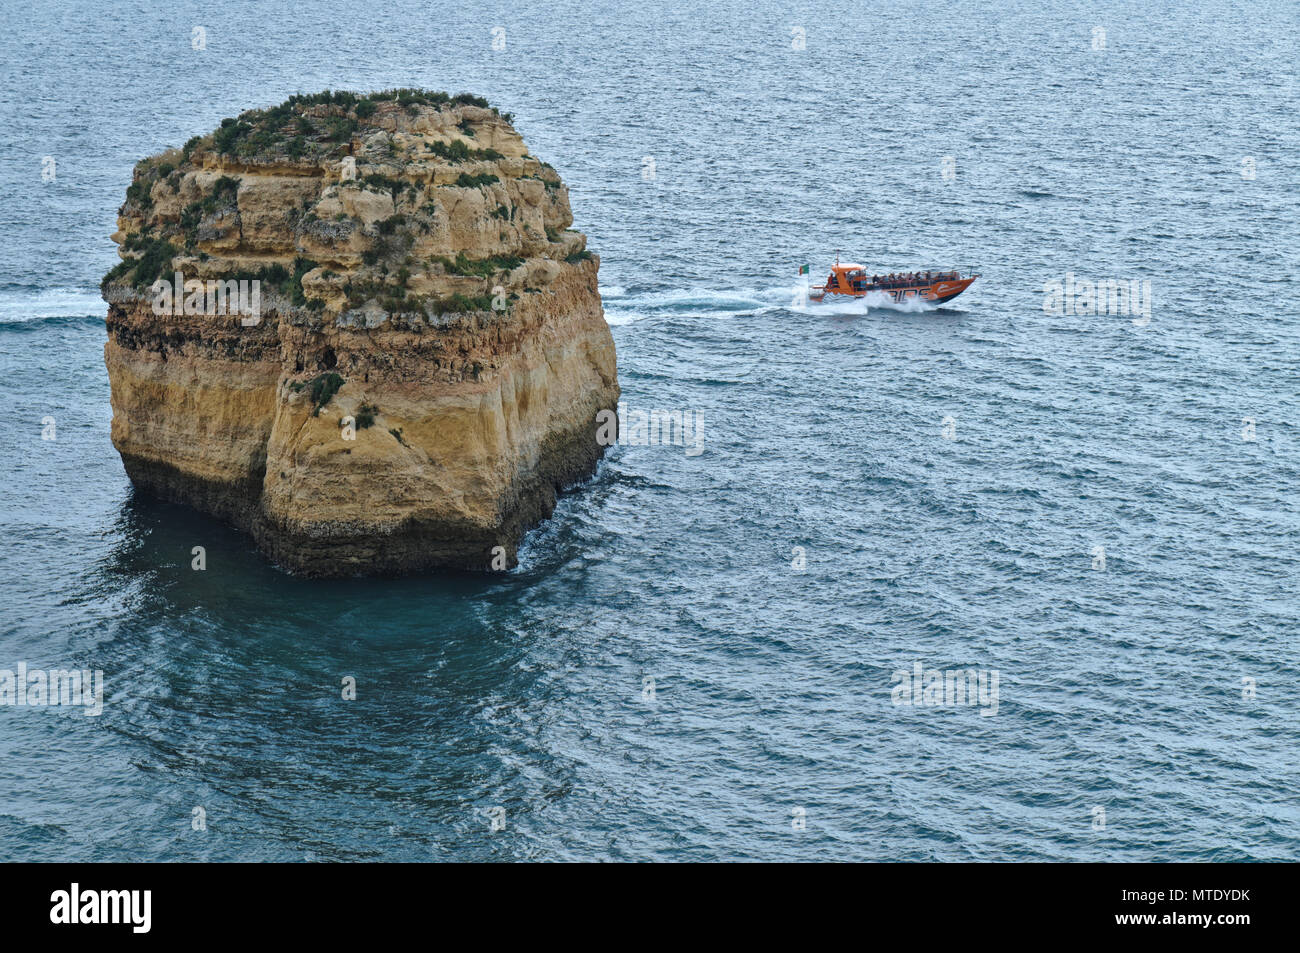 Boat cave tours along the coast of Lagoa, Algarve, Portugal Stock Photo